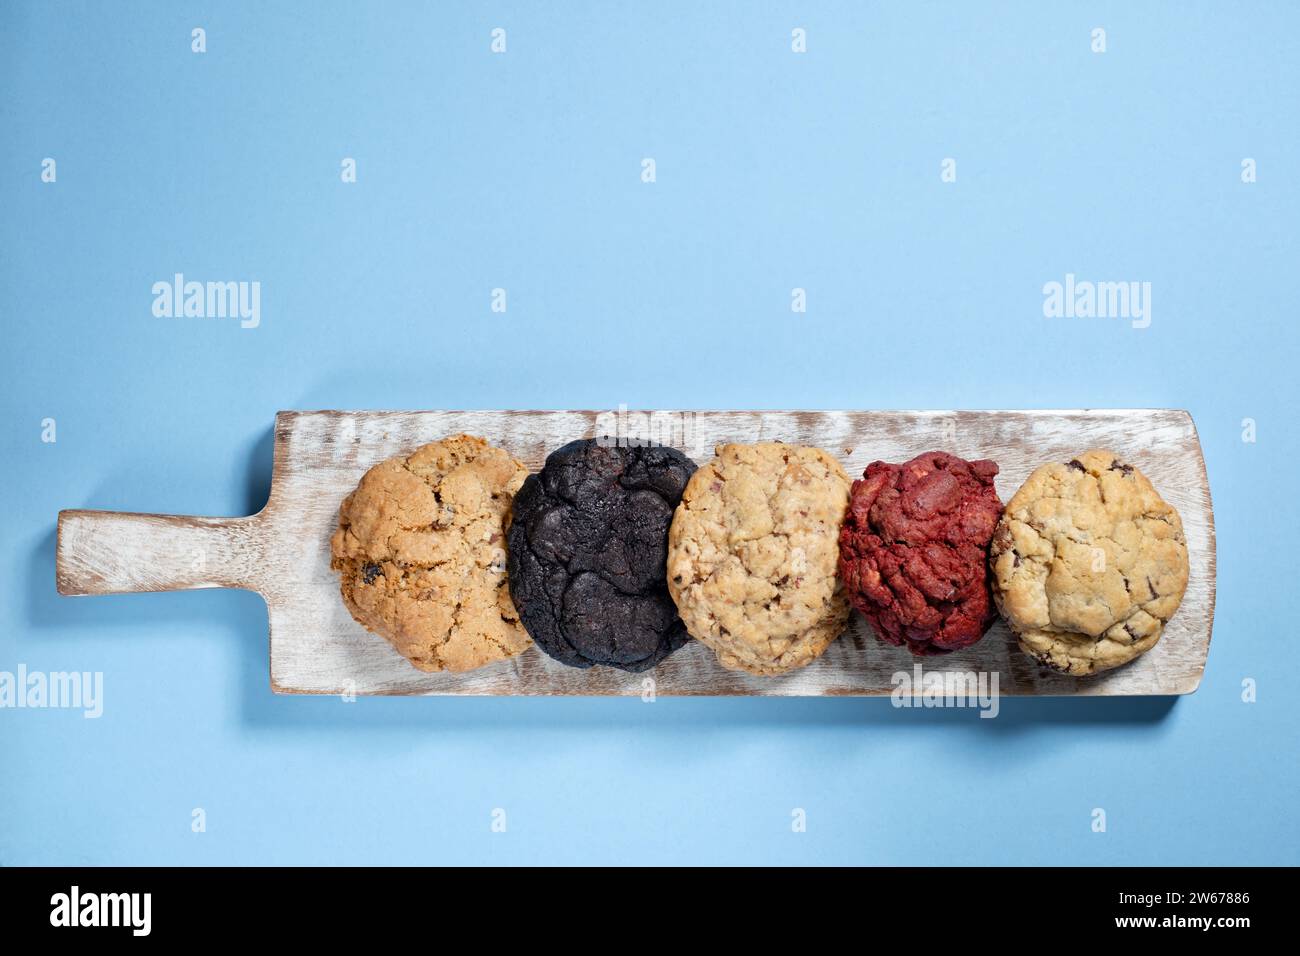 Una selección de galletas recién hechas estilo NY alineadas en una tabla de servir y fotografiadas sobre un fondo liso Foto de stock